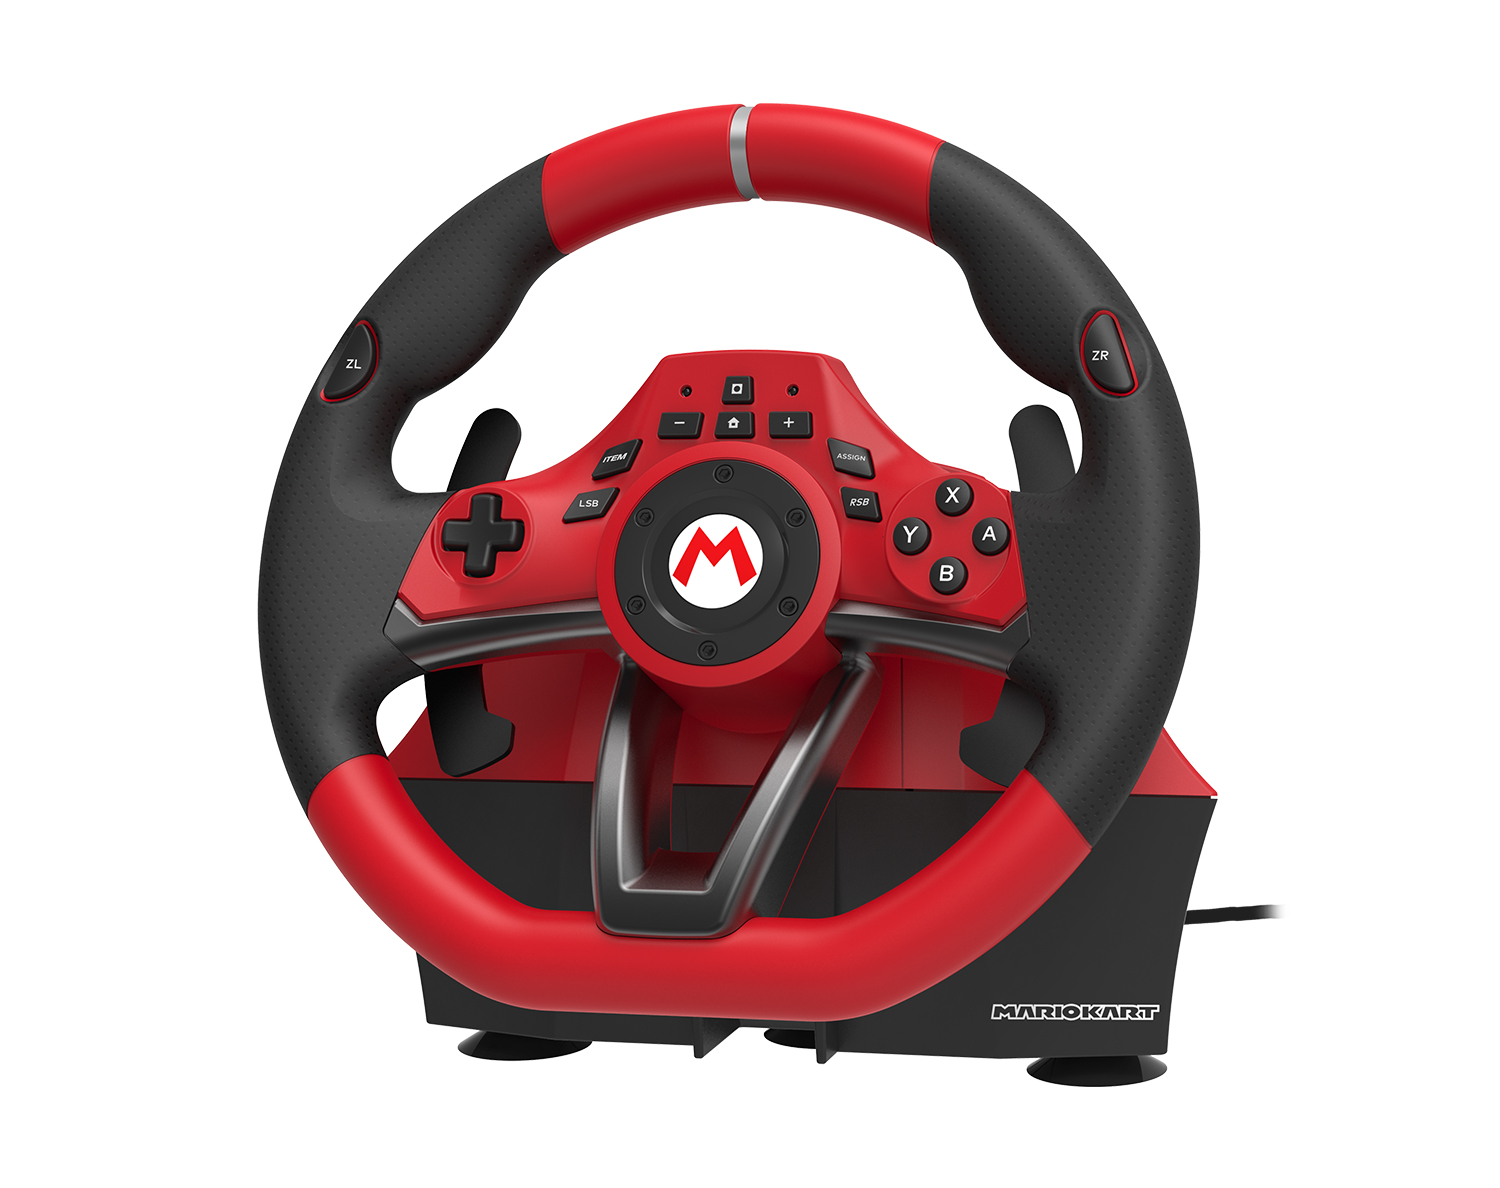 株式会社 HORI | マリオカートレーシングホイール DX for Nintendo Switch